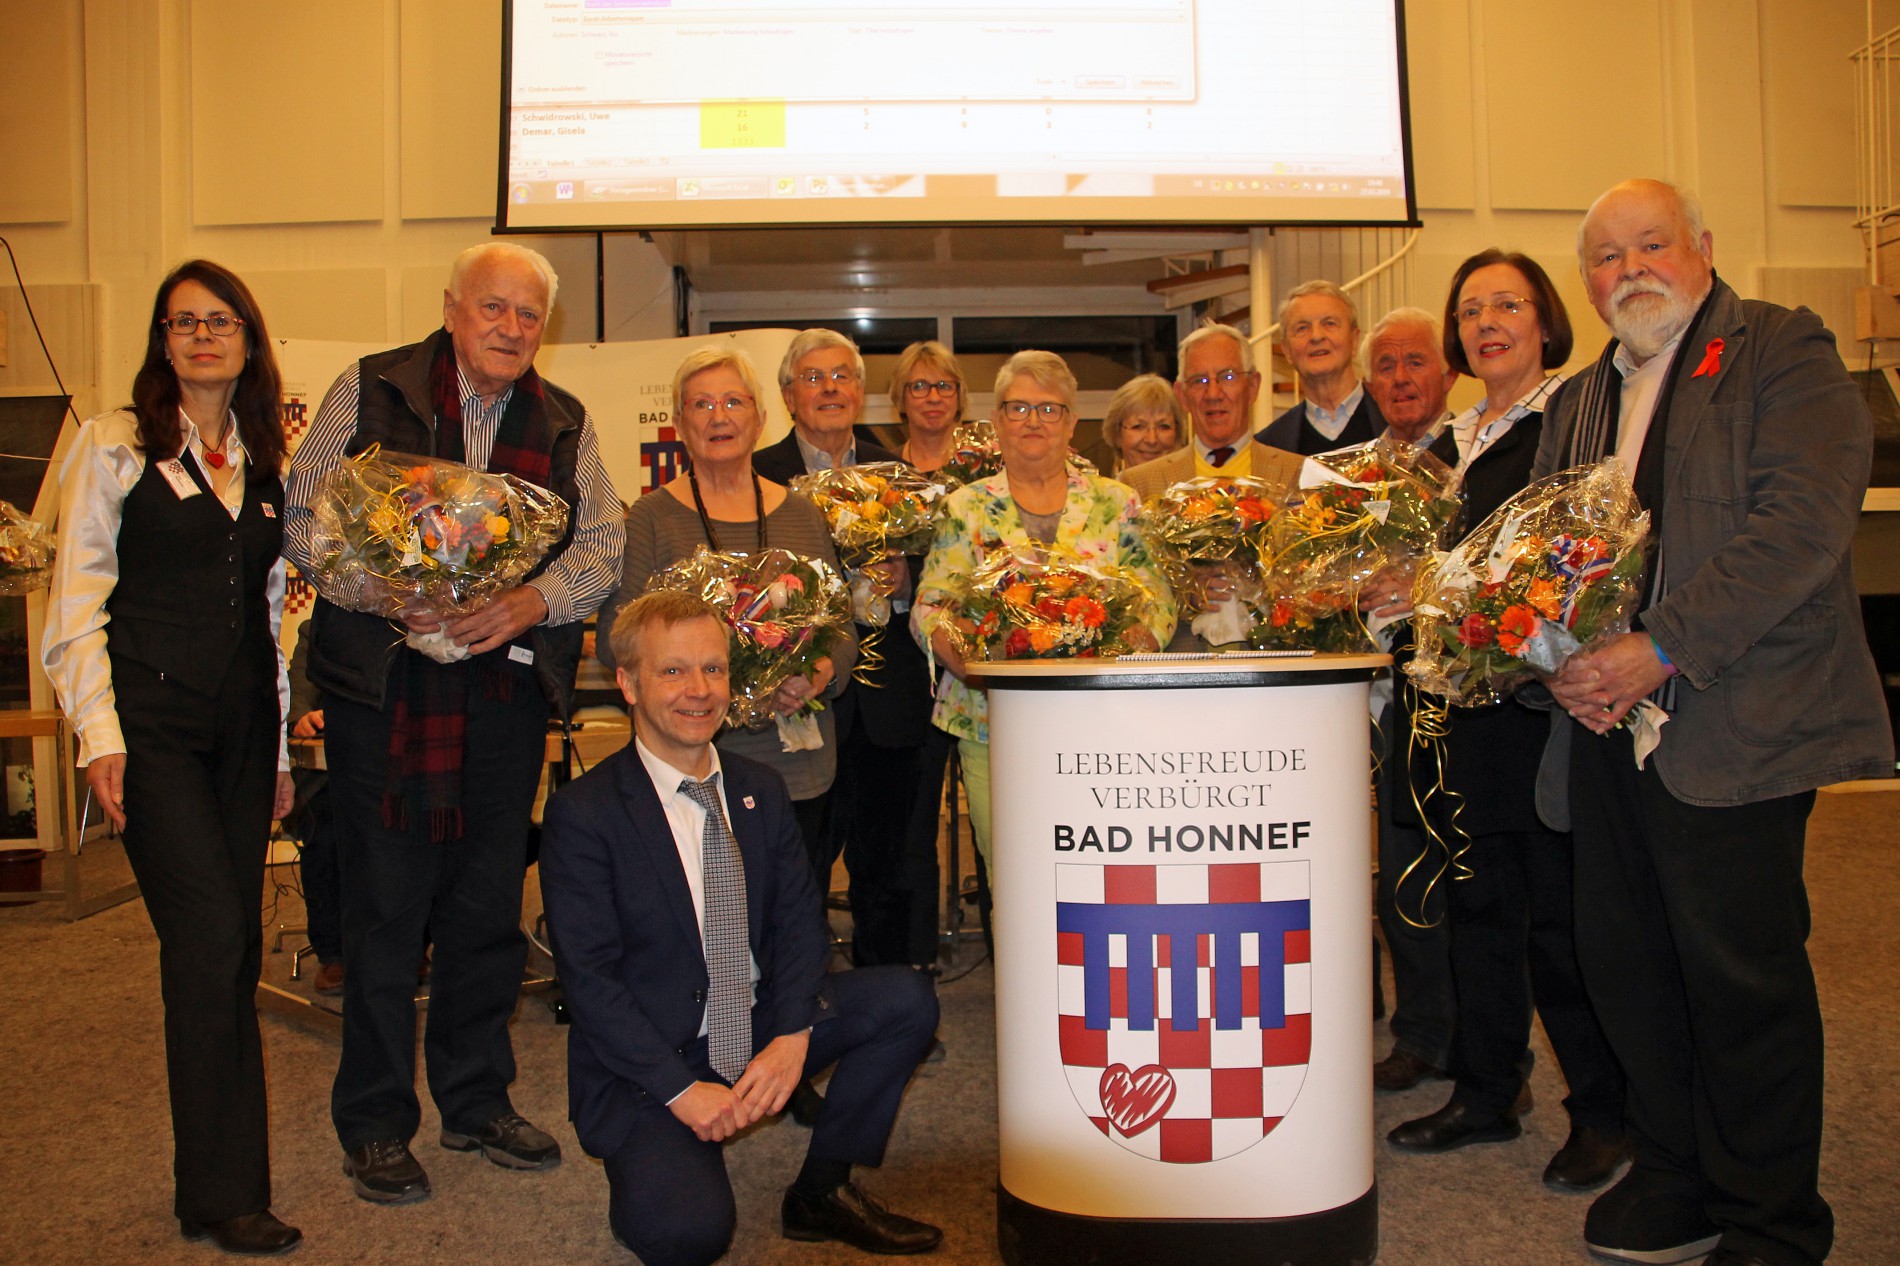 Seniorenvertretung in Bad Honnef gewählt